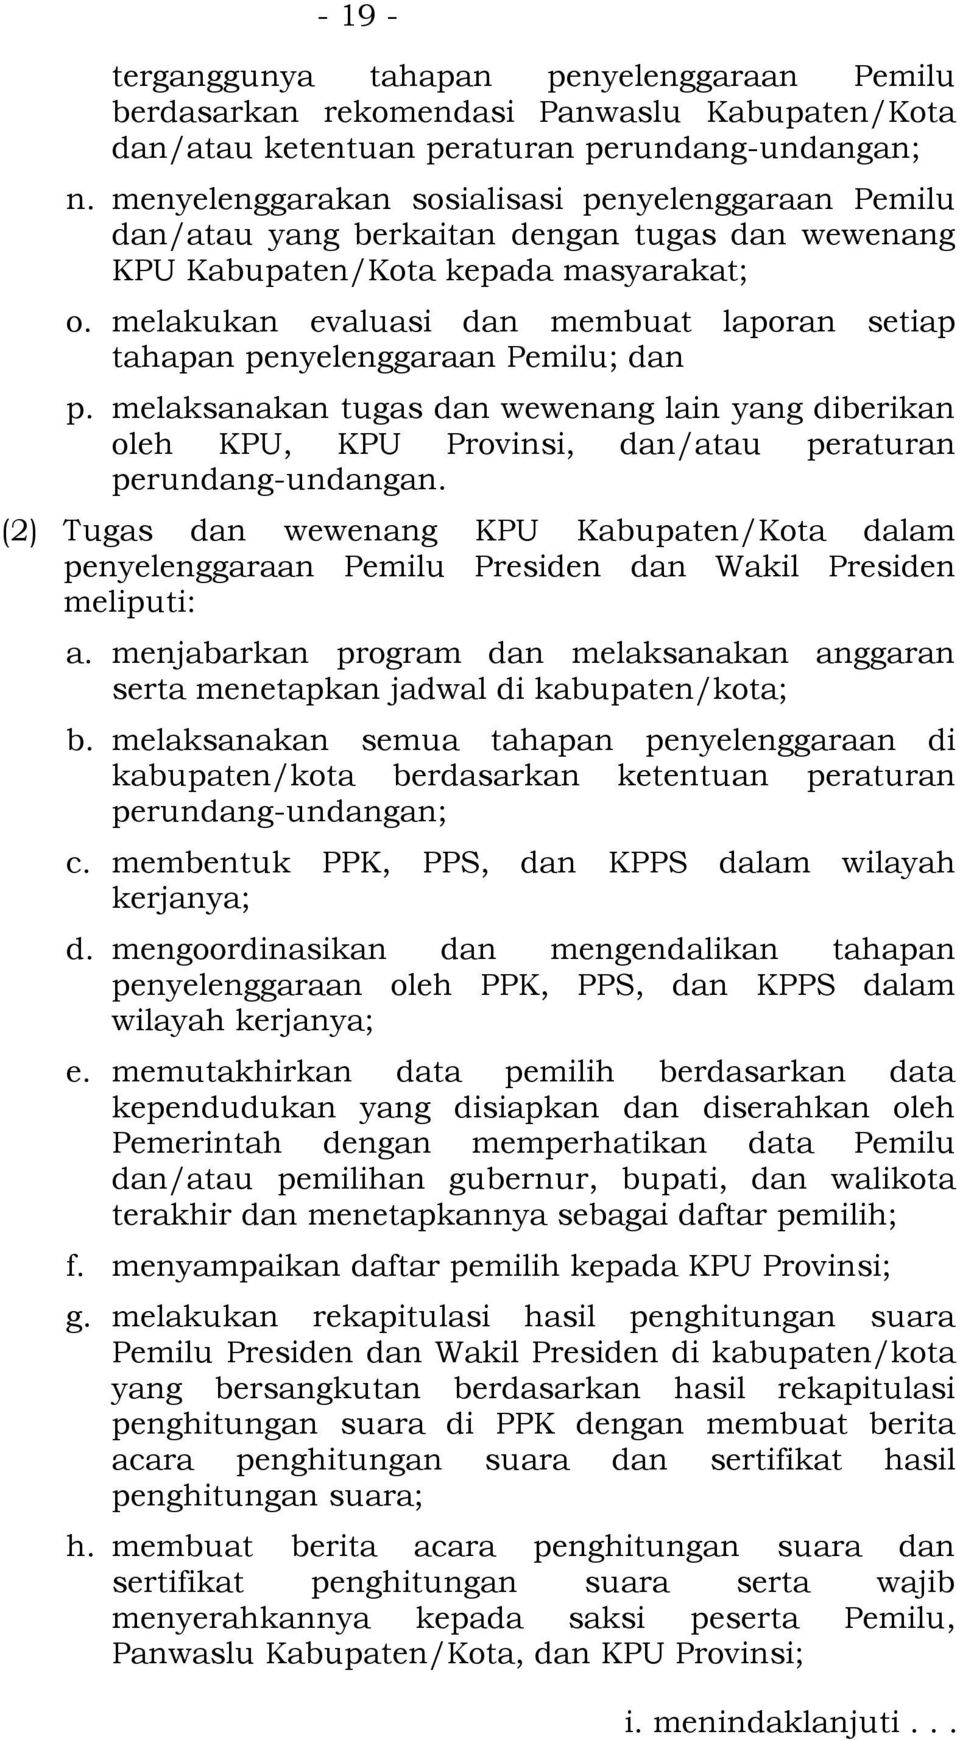 melakukan evaluasi dan membuat laporan setiap tahapan penyelenggaraan Pemilu; dan p. melaksanakan tugas dan wewenang lain yang diberikan oleh KPU, KPU Provinsi, dan/atau peraturan perundang-undangan.